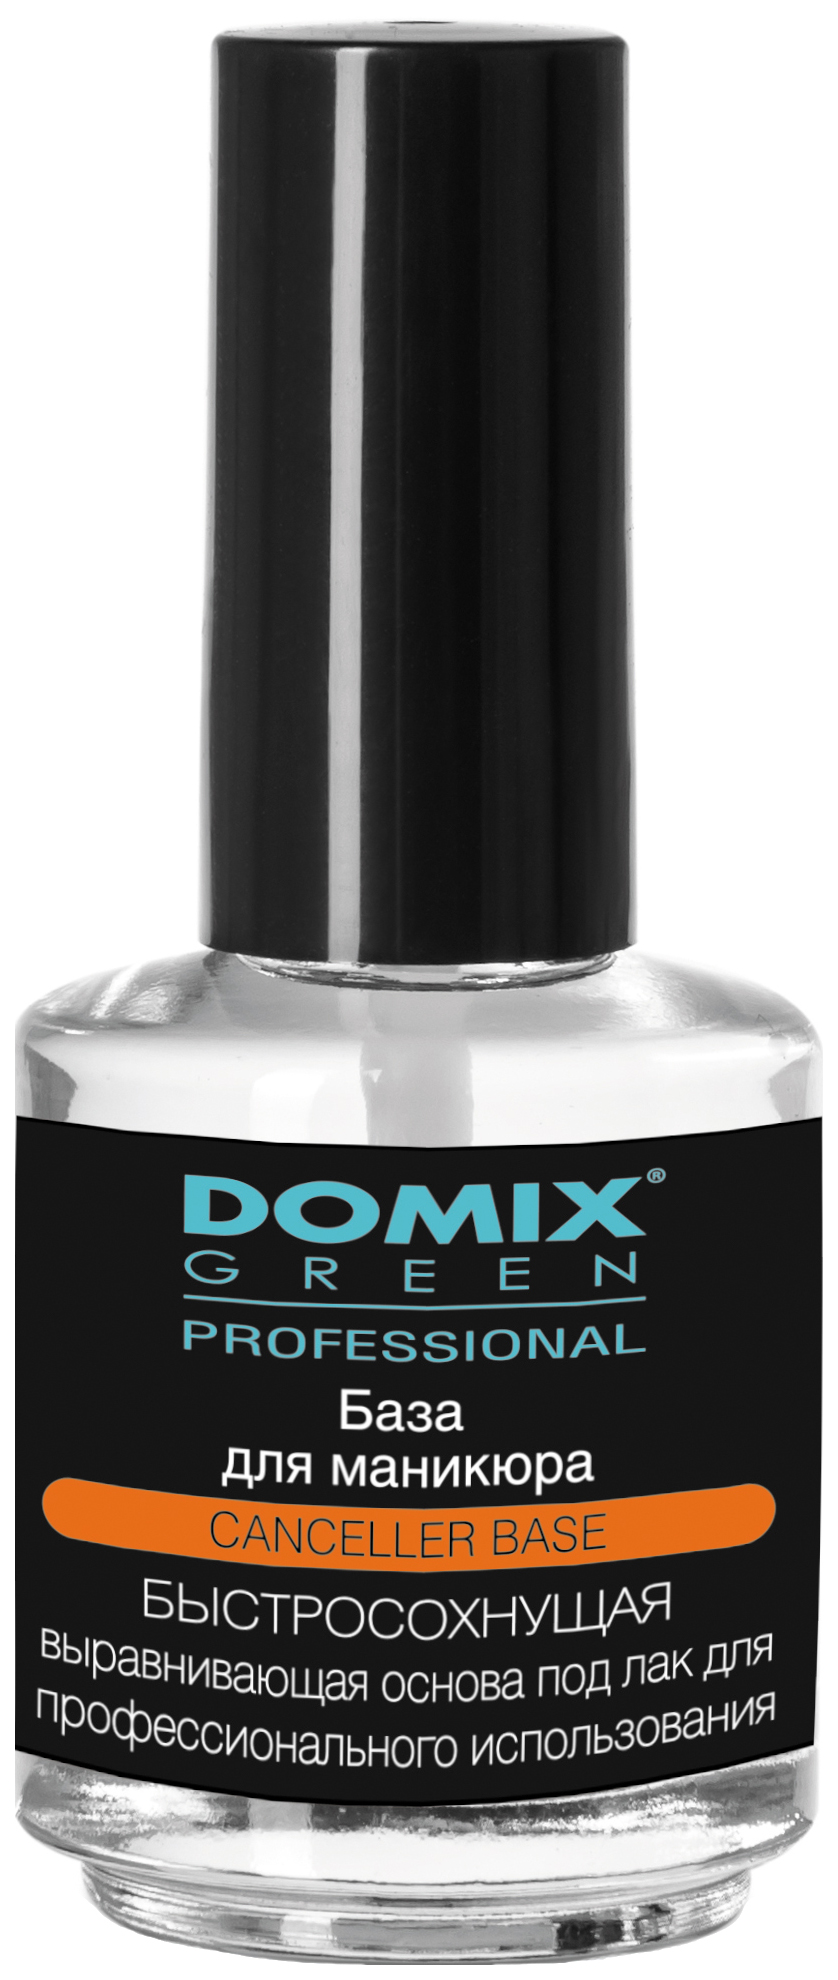 База Domix Green Professional Быстросохнущая 17 мл быстросохнущая рубашка c p company